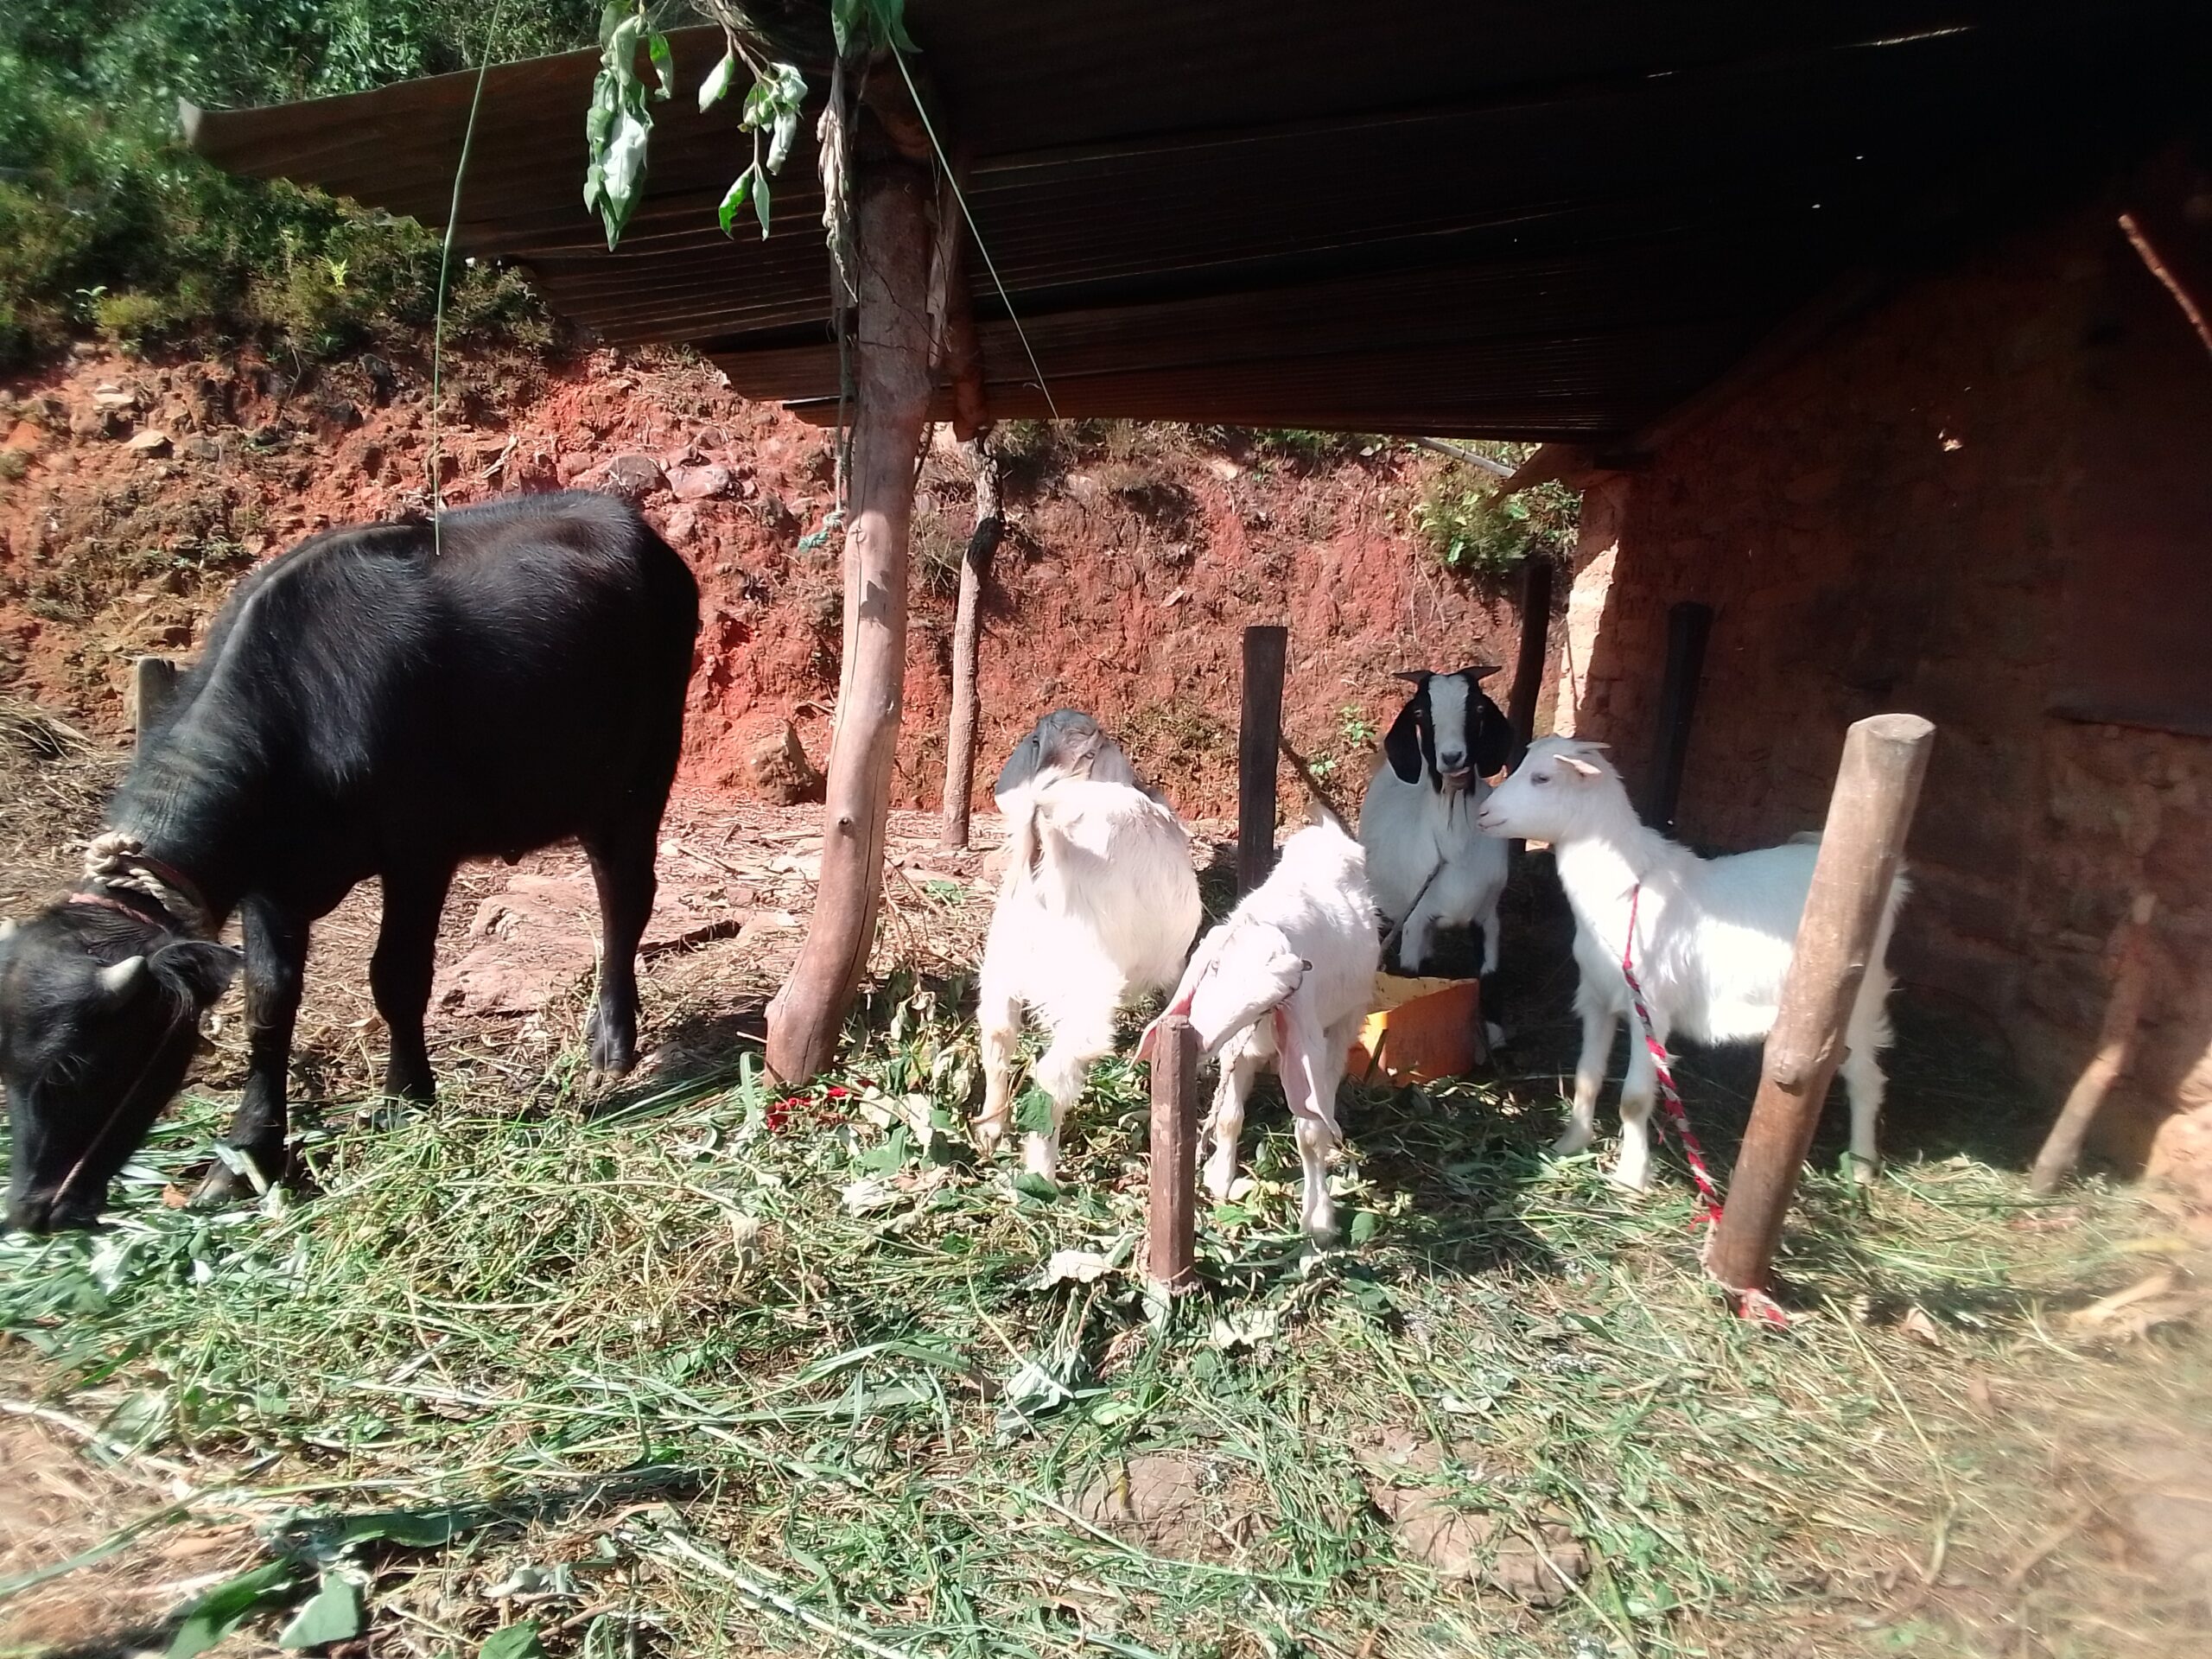 Eine schwarze Kuh und vier weisse Ziegen fressen Gras. Sie stehen unter einem Vordach aus Wellblech, das zu einem Stall gehört.